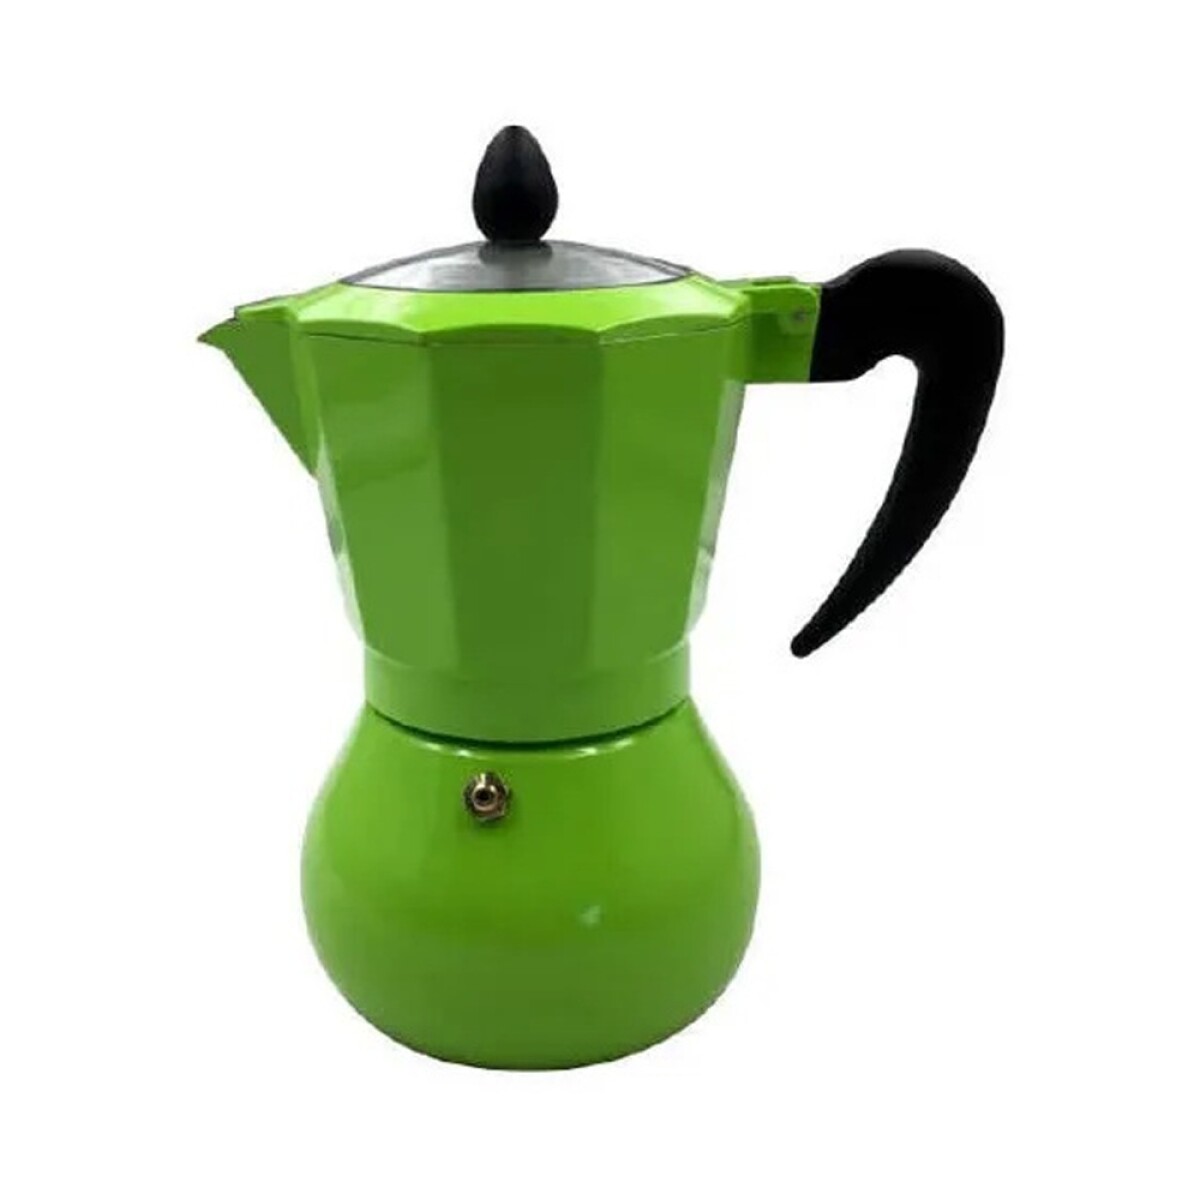 Cafetera tipo italiana 6 tazas colores - Verde 